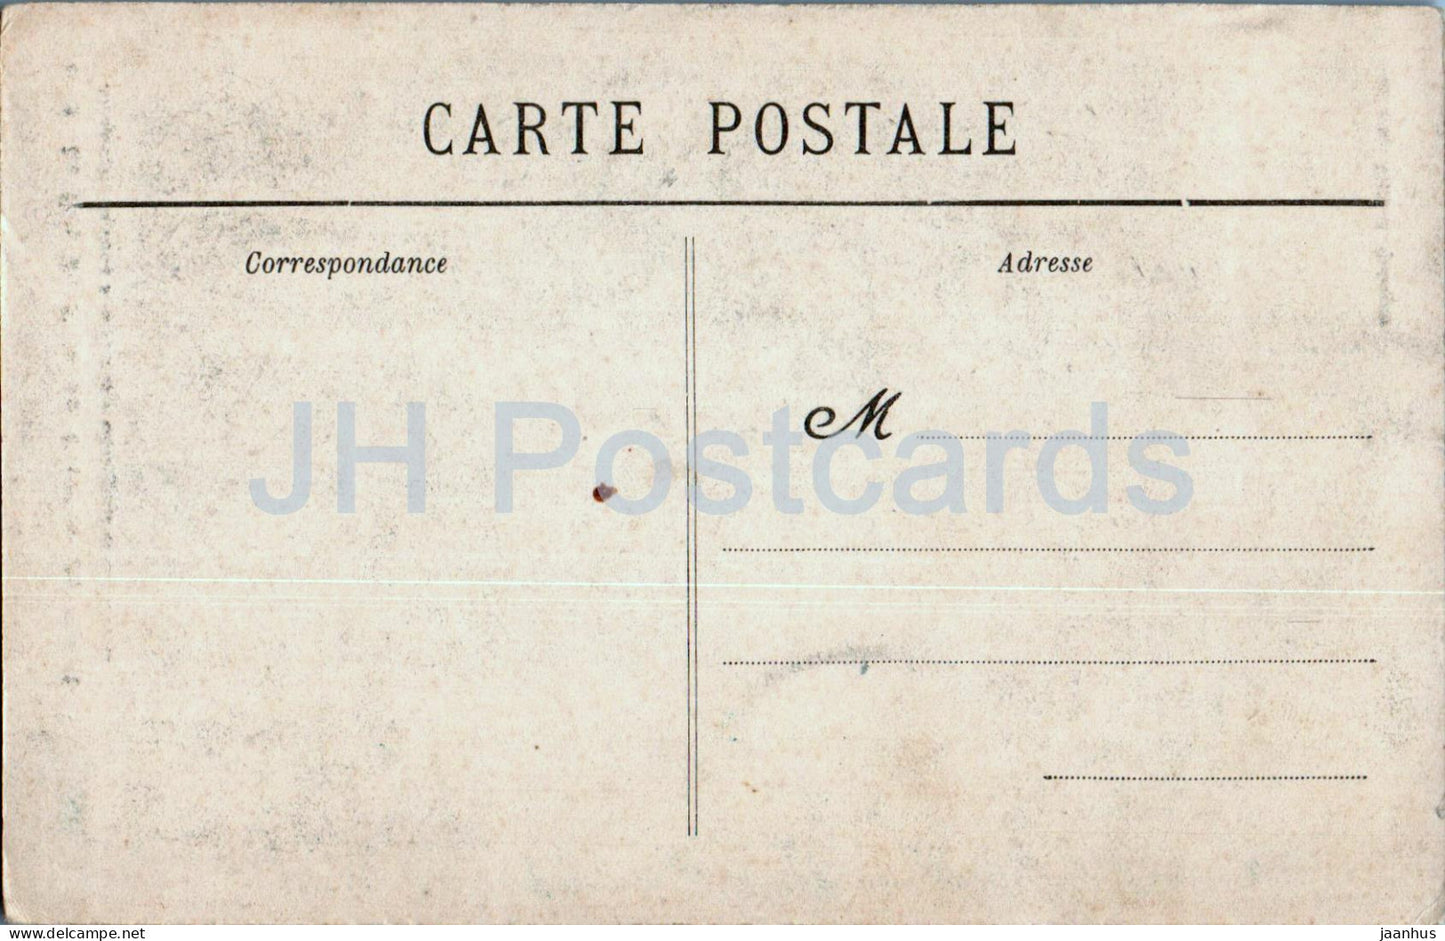 Le Raz de Sein au Coucher du Soleil - Allumage des Feux a la Vieille - Leuchtturm 6582 - alte Postkarte - Frankreich - unbenutzt 